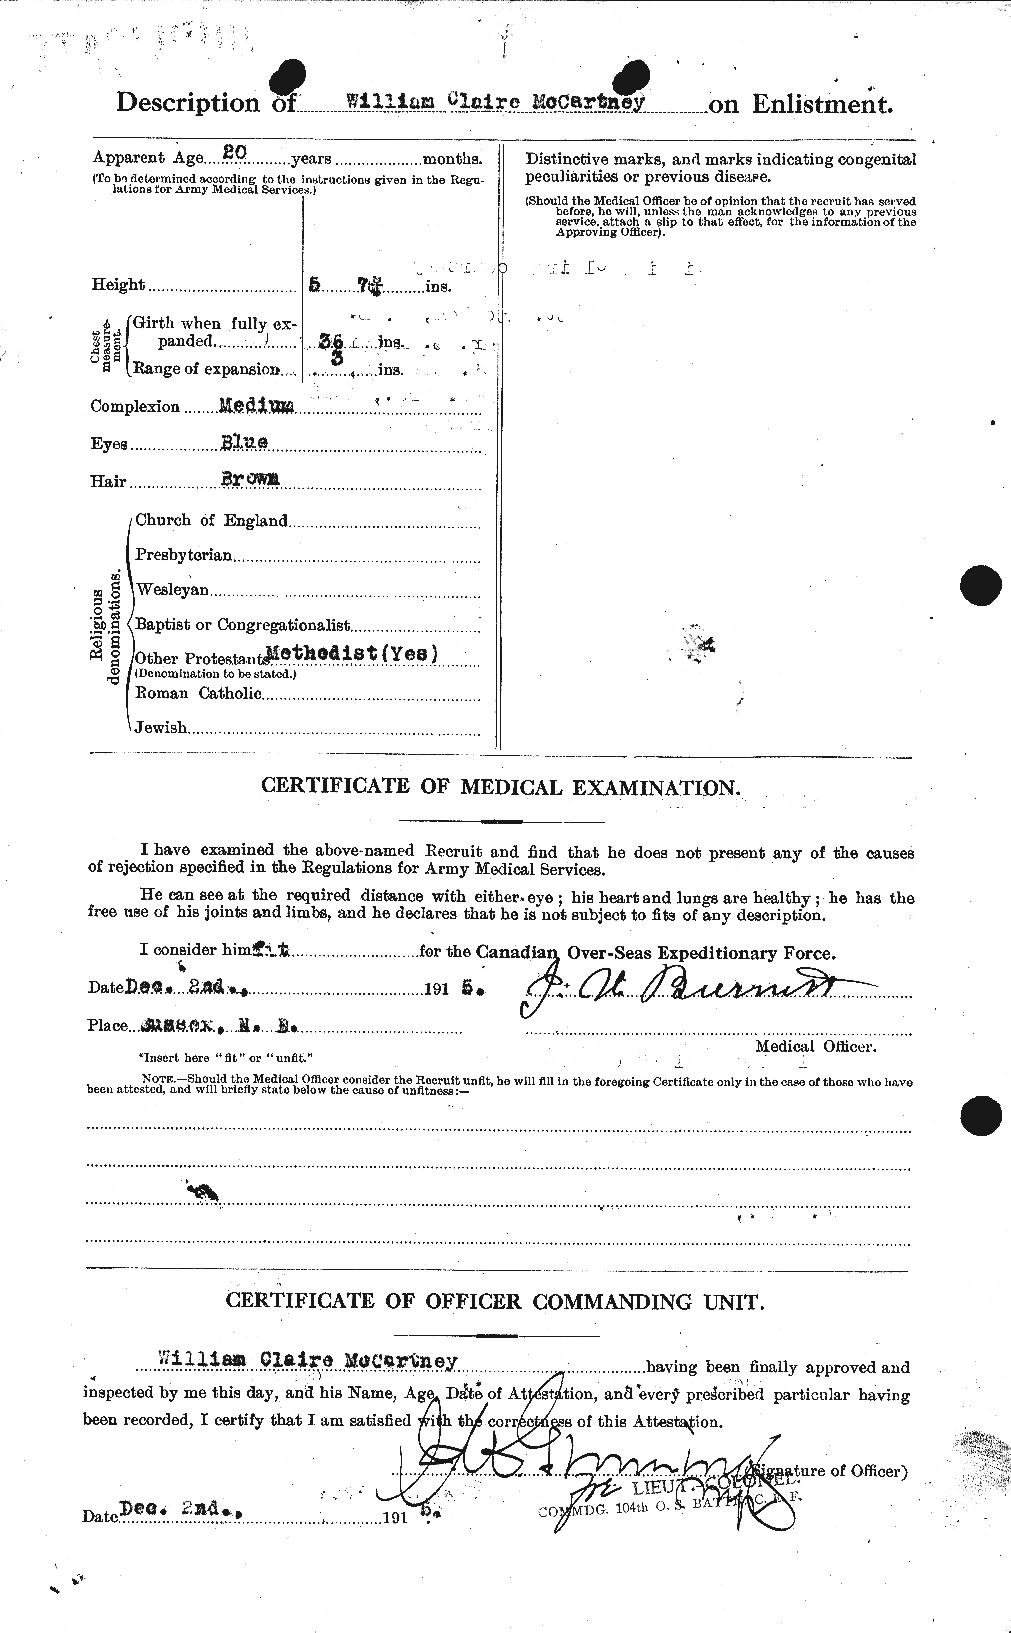 Dossiers du Personnel de la Première Guerre mondiale - CEC 133524b